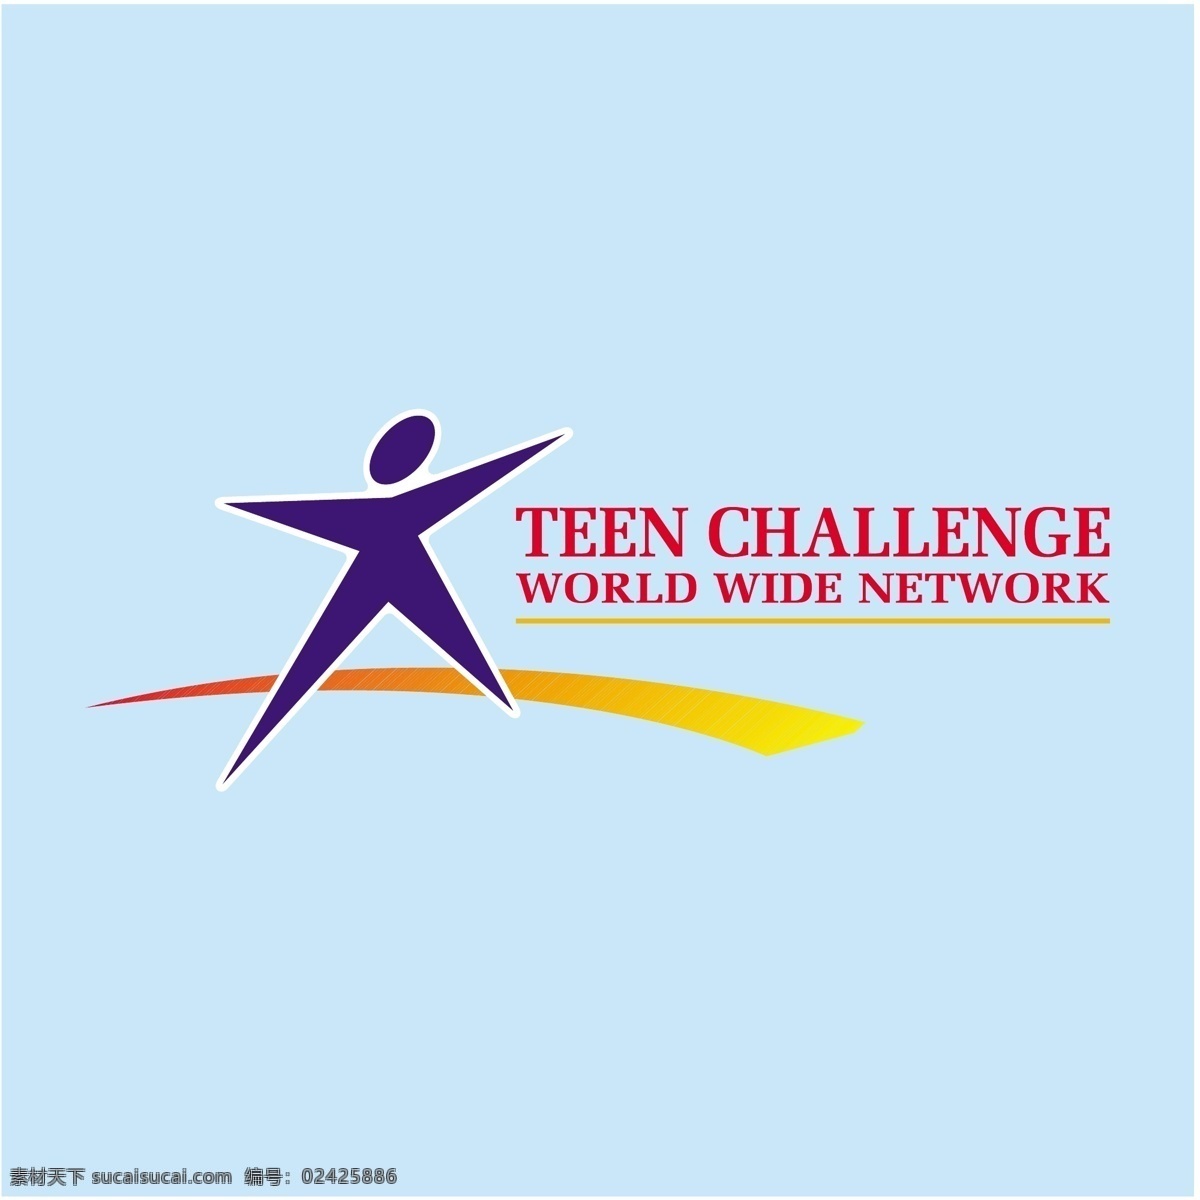 青少年 挑战 世界 范围 网络 青少年的挑战 挑战世界 广 广泛的网络 万维网 全球世界 矢量 全世界的载体 青色 天蓝色